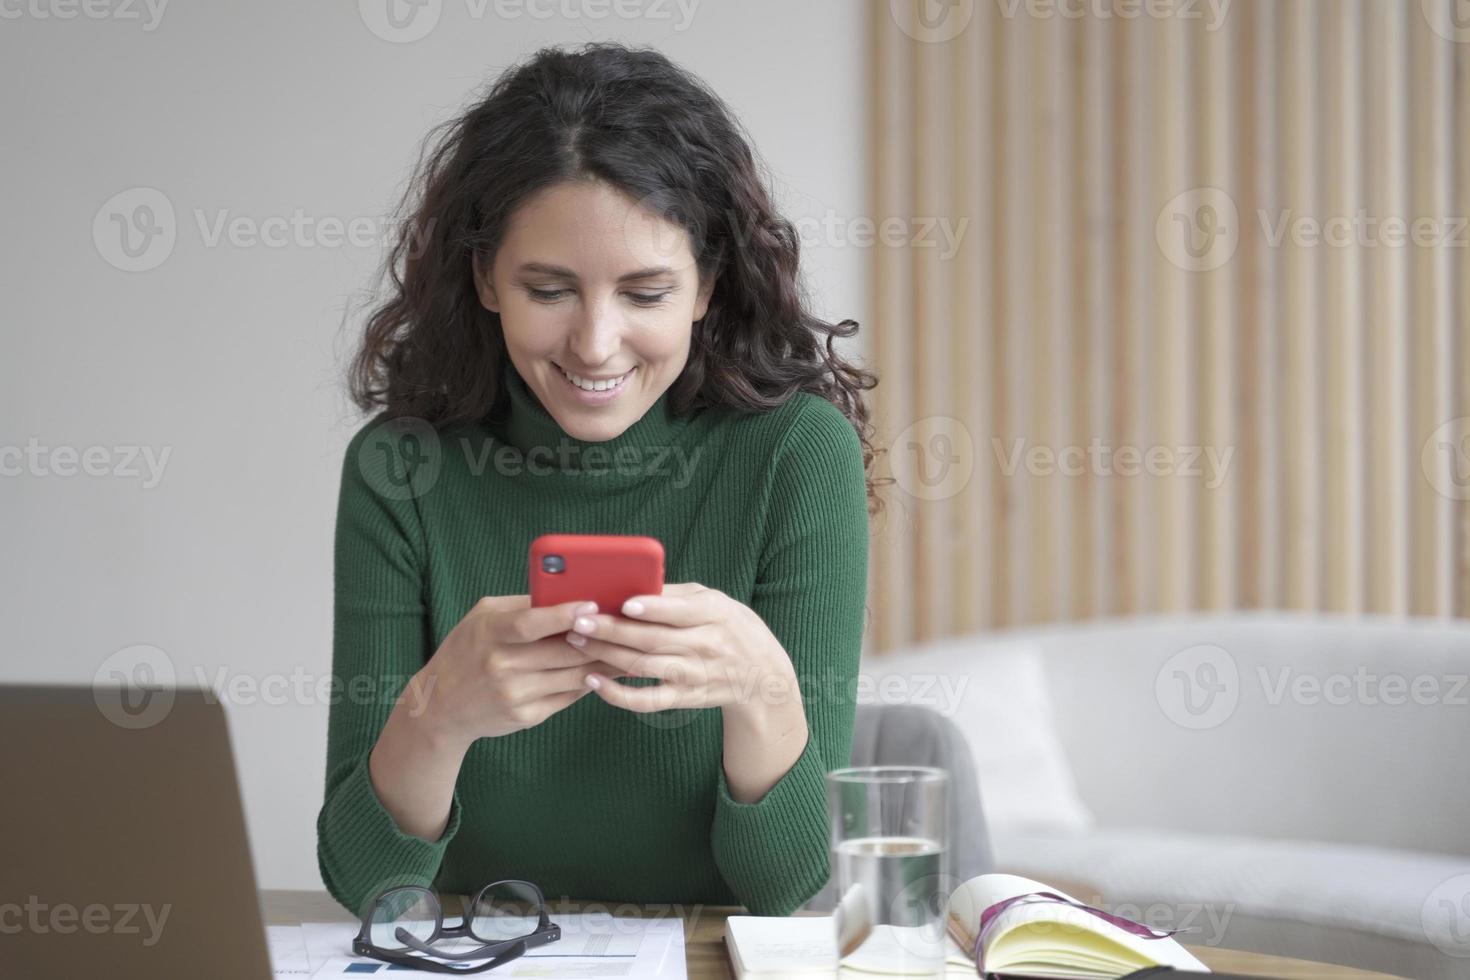 jovem freelancer italiana com cabelos ondulados escuros segurando o celular e olhando para a tela com um sorriso foto